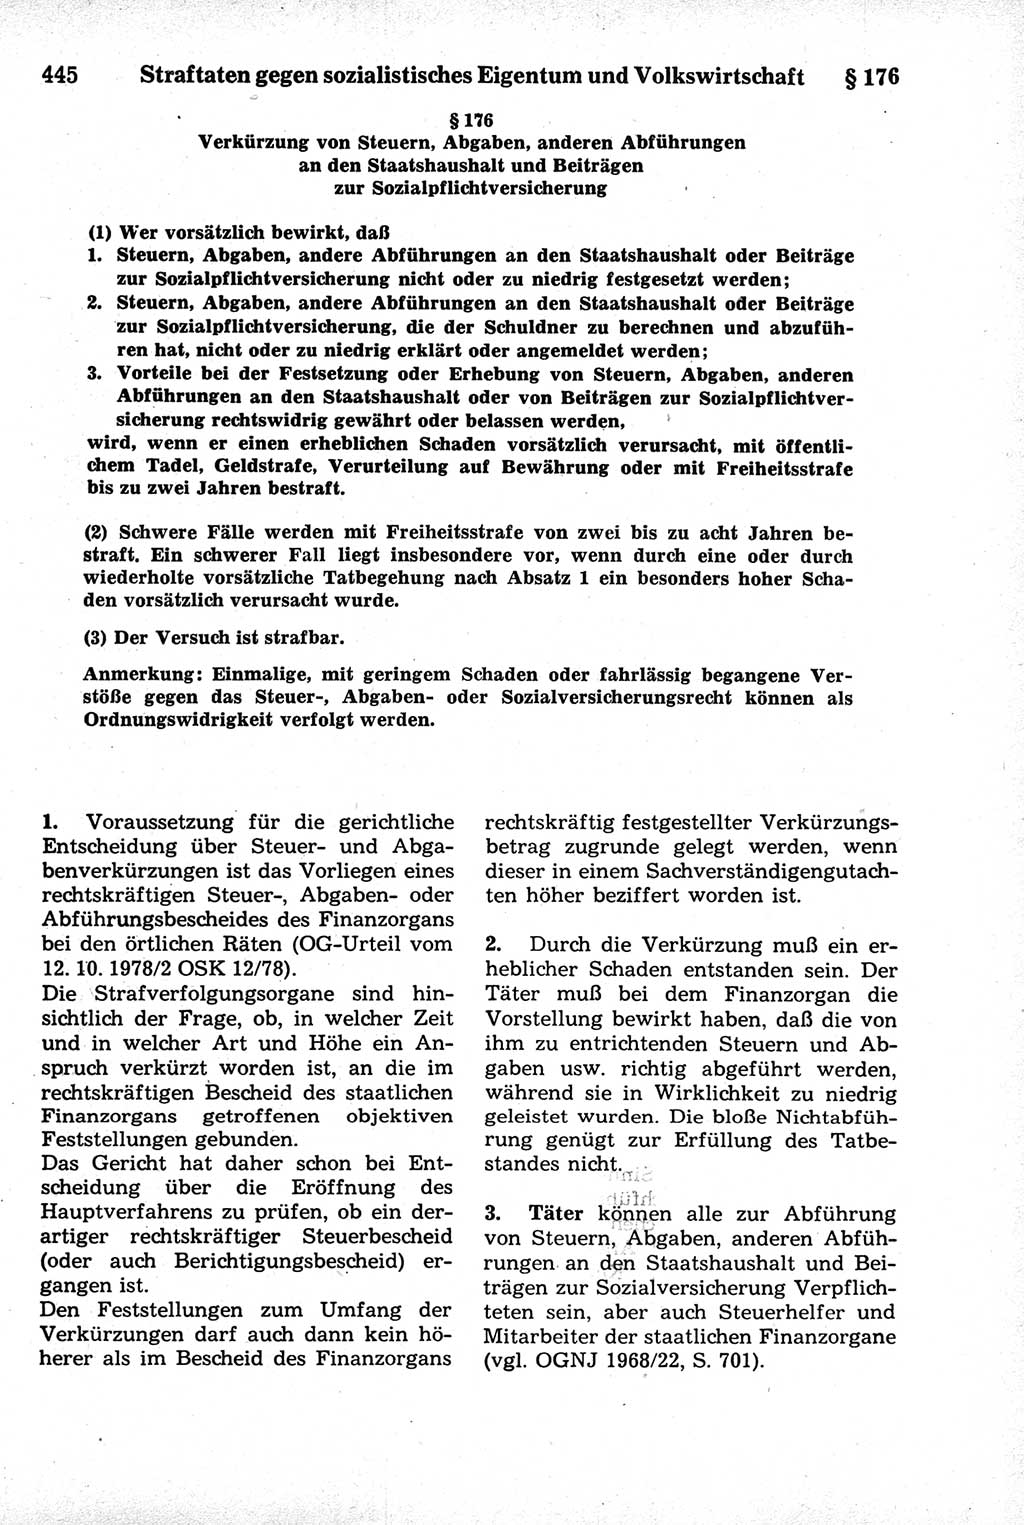 Strafrecht der Deutschen Demokratischen Republik (DDR), Kommentar zum Strafgesetzbuch (StGB) 1981, Seite 445 (Strafr. DDR Komm. StGB 1981, S. 445)